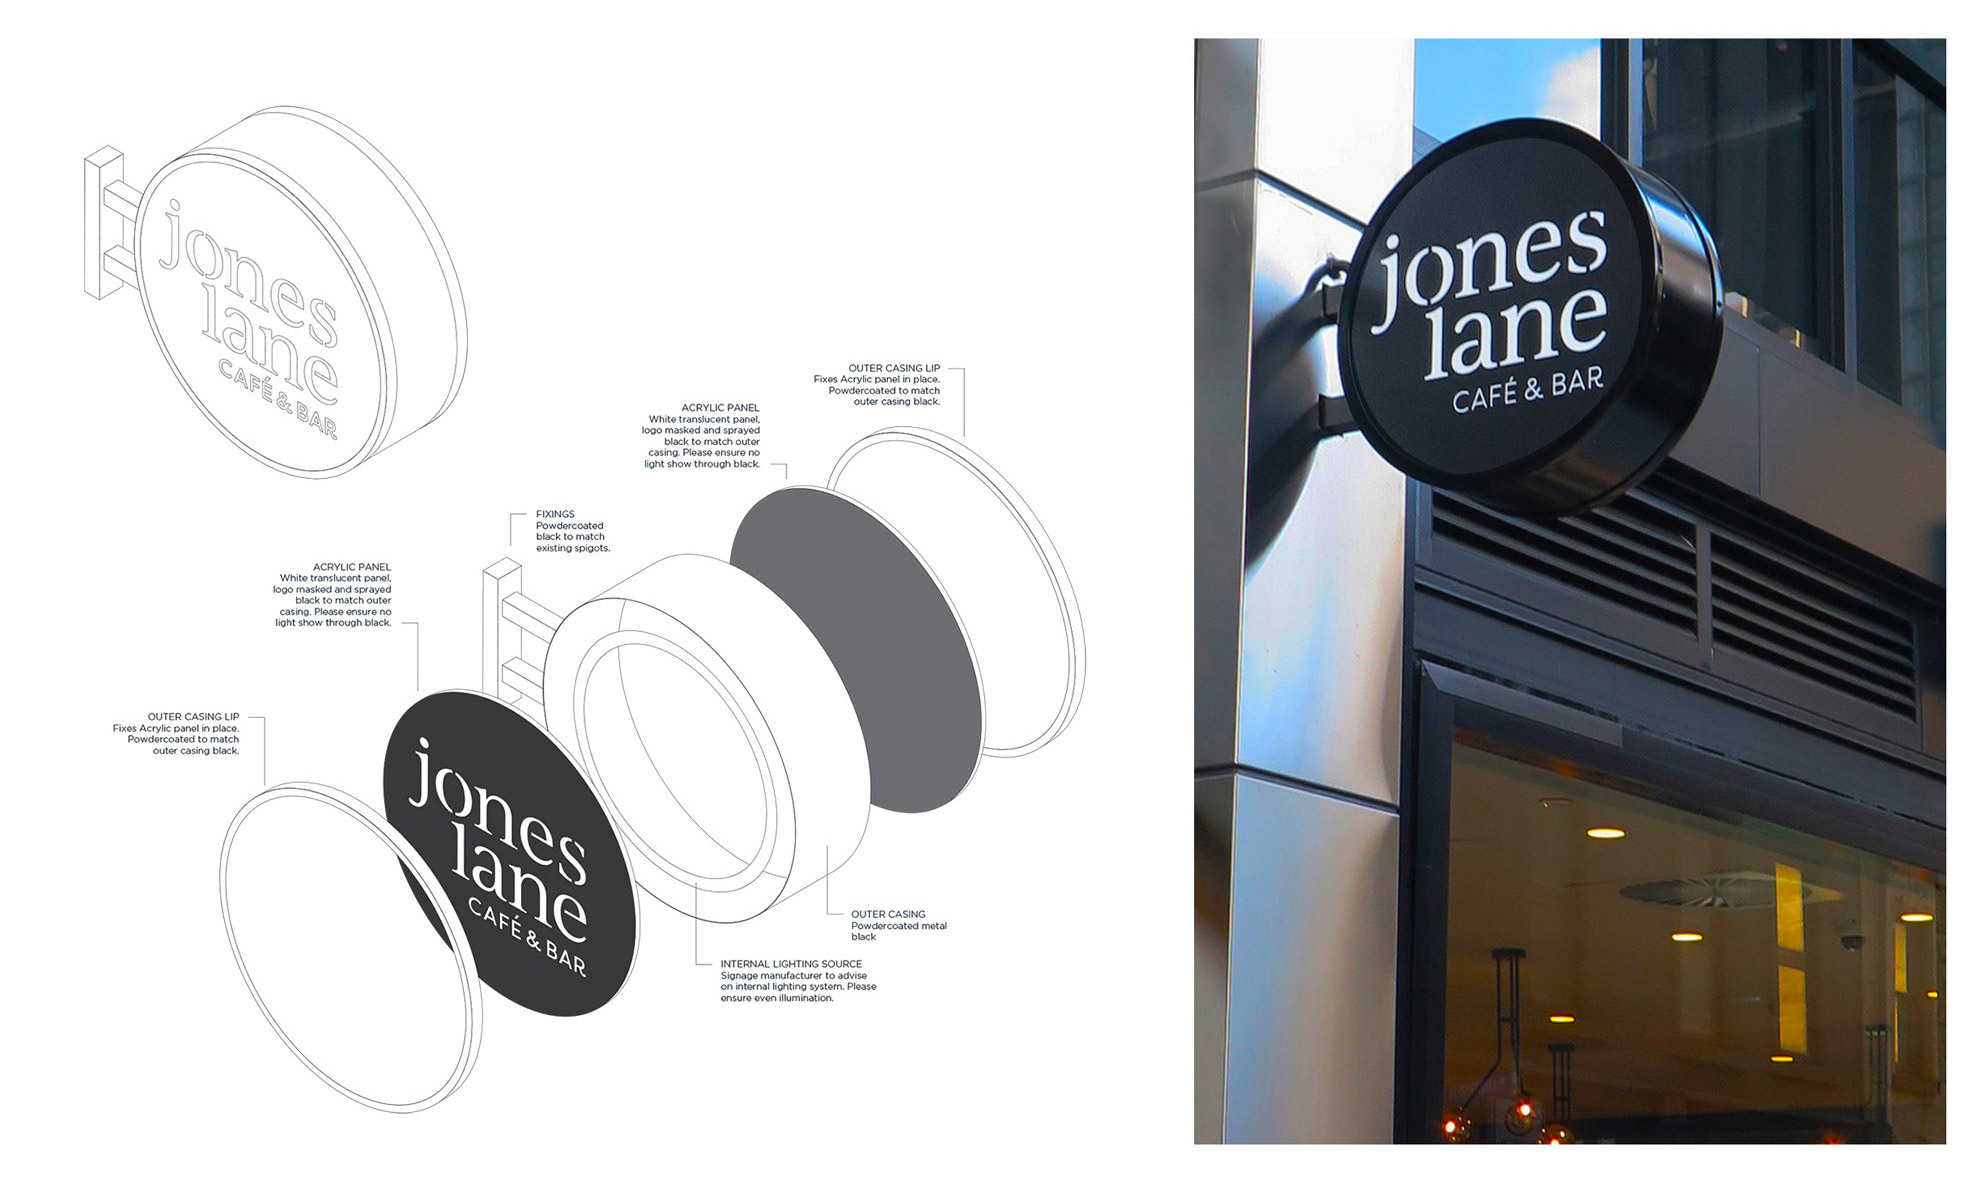 Jones Lane Cafe signage design